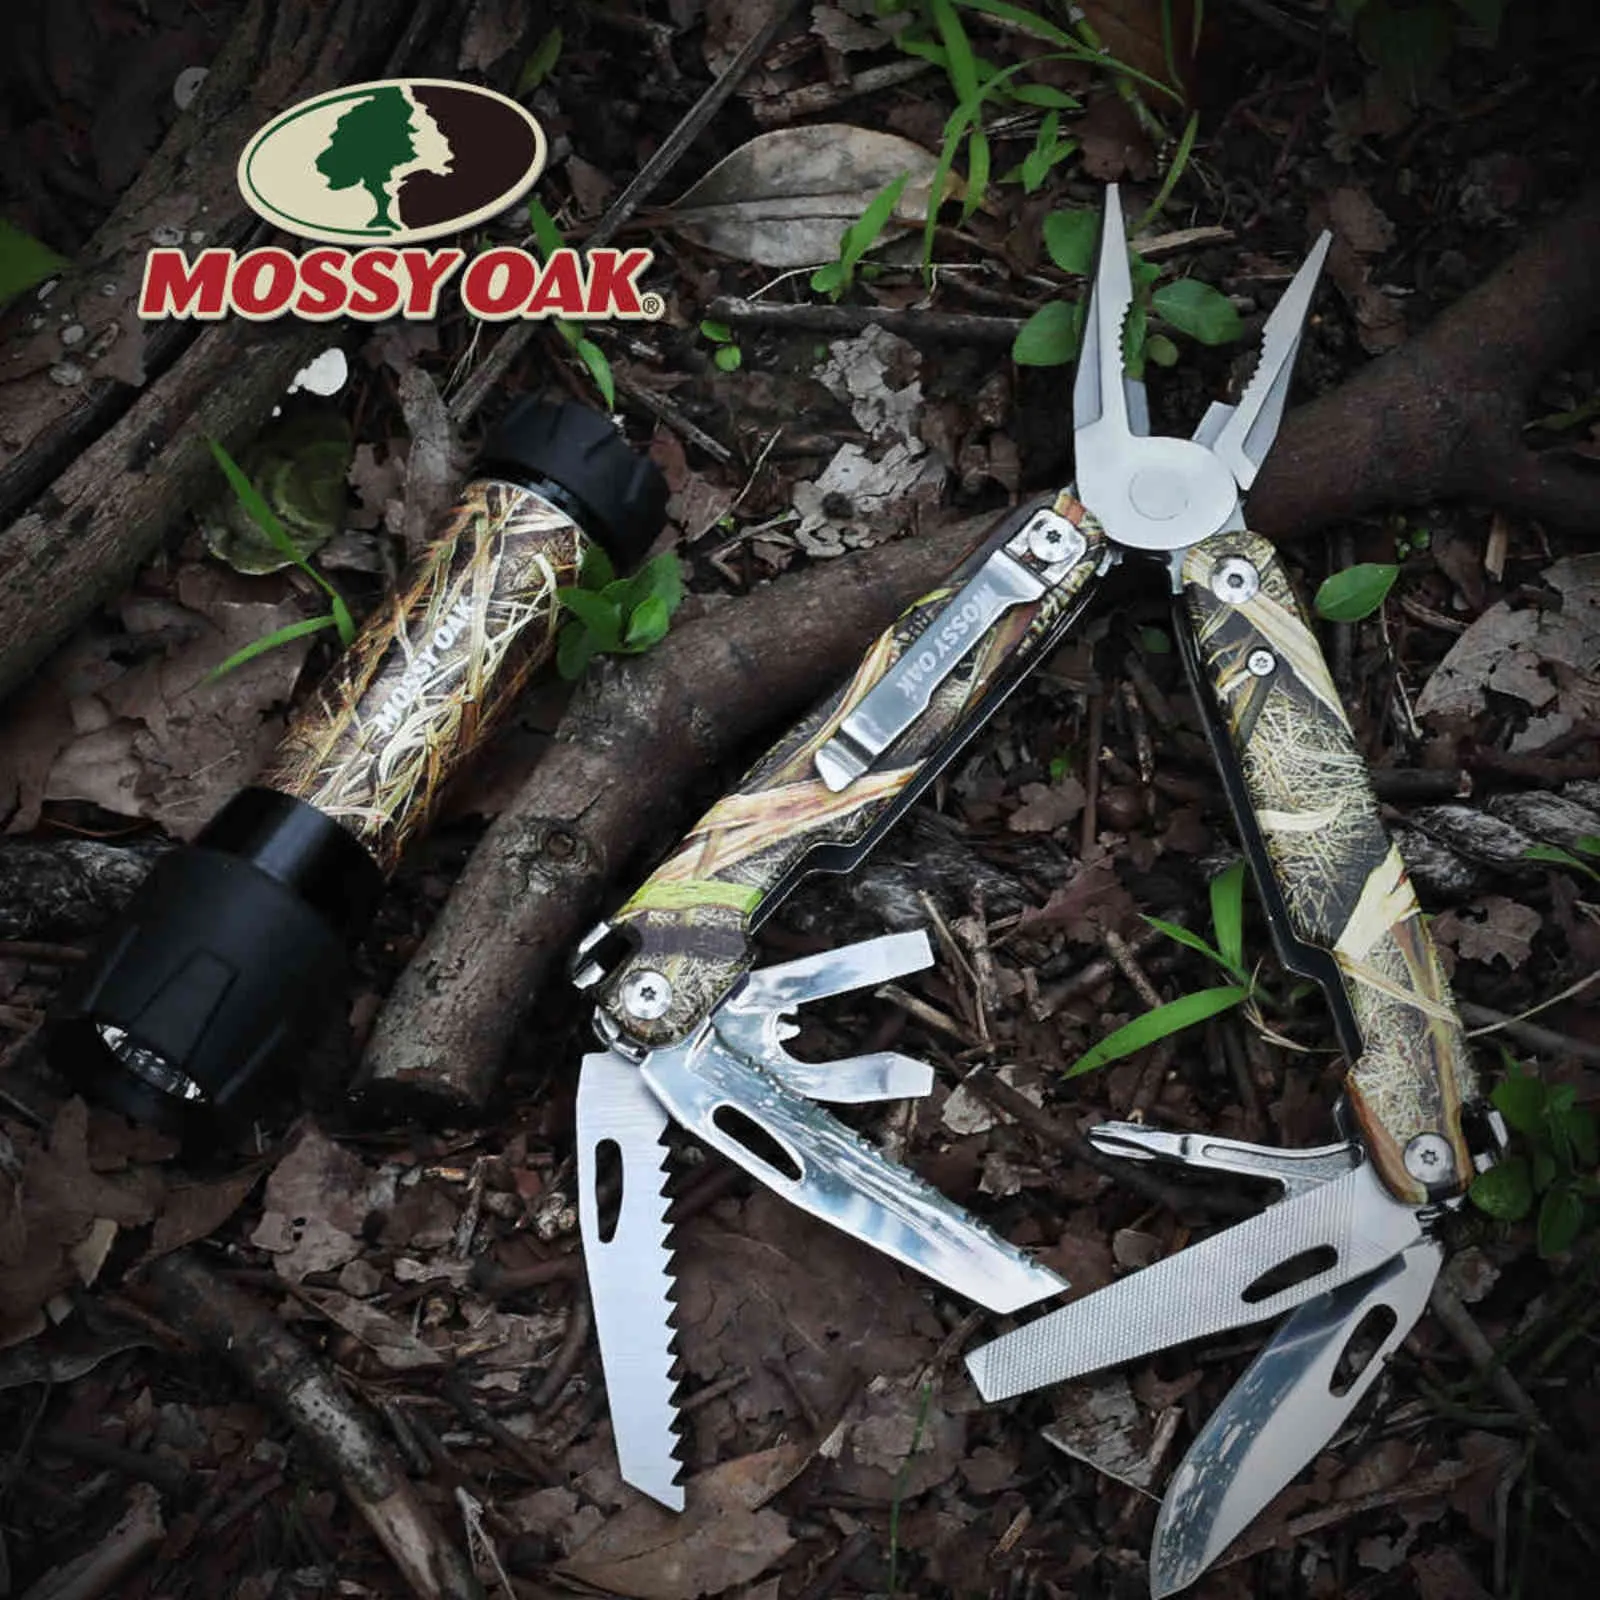 Mossy Oak Multitool 12-in-1 다중 플라이어 와이어 커터 다기능 도구 생존 캠핑 도구 낚시 211028299I